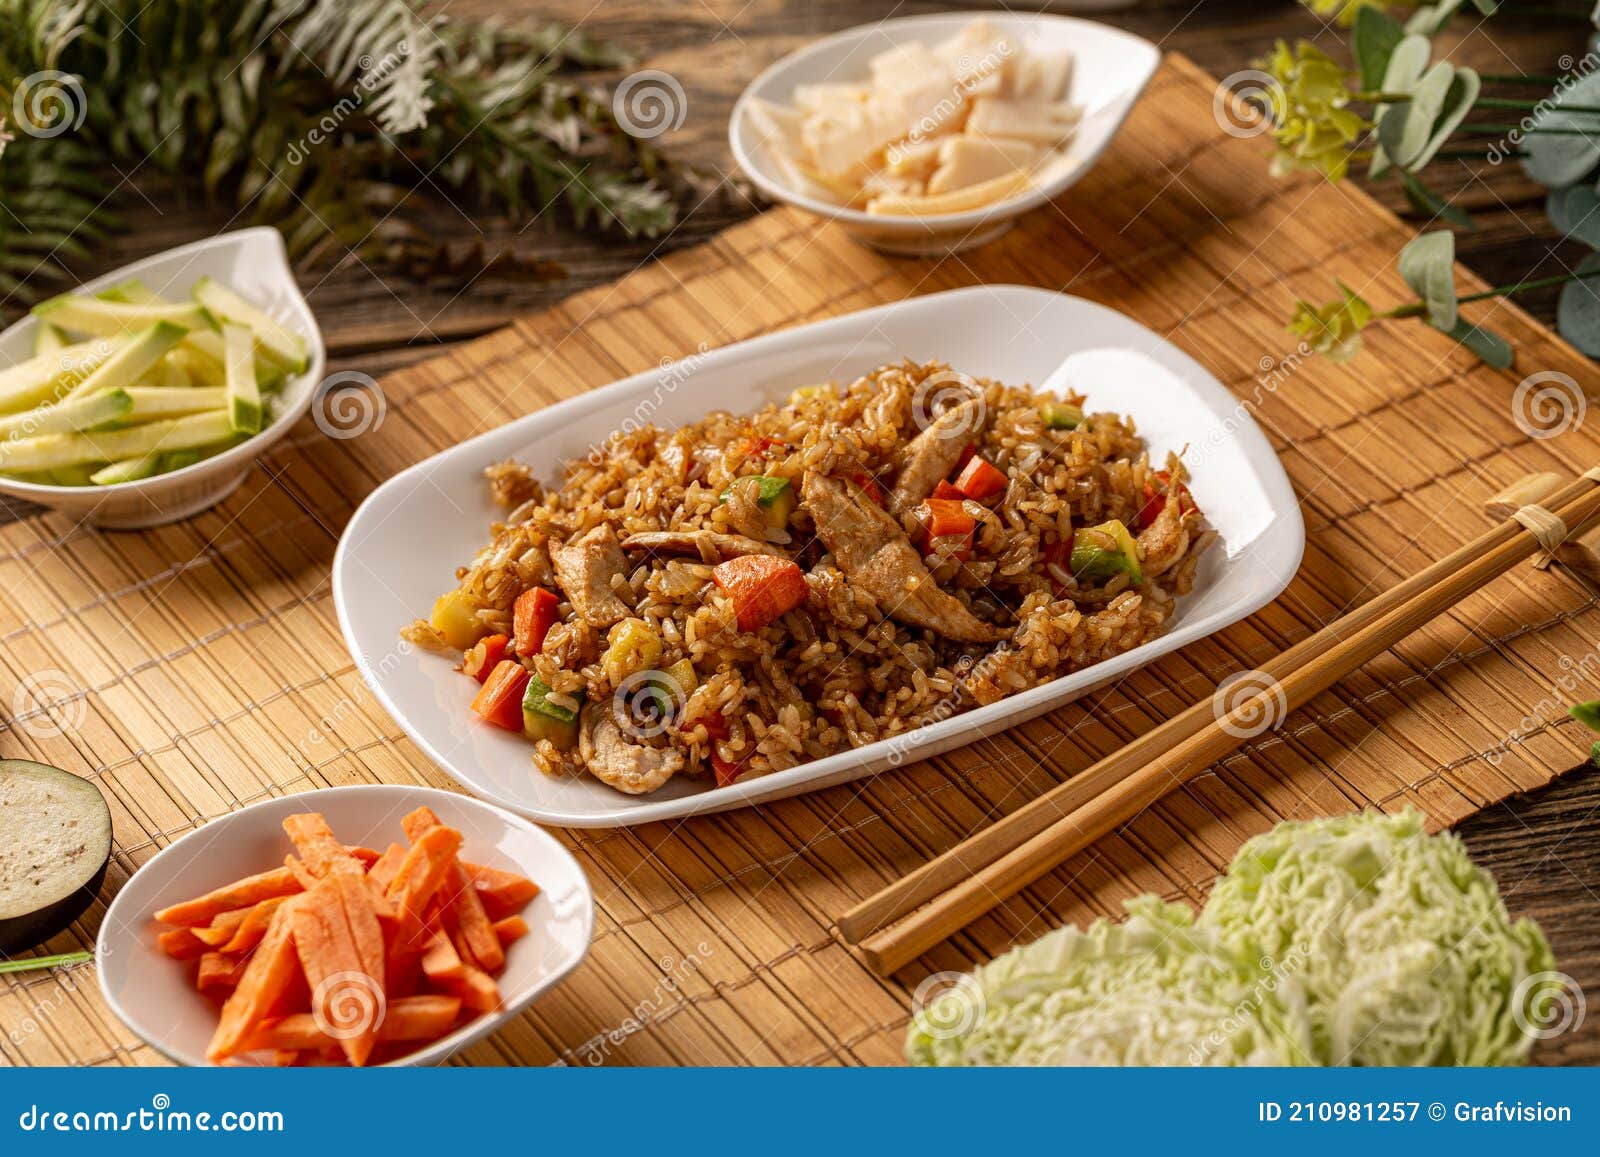 传统中国菜菜单库存图片 图片包括有汉语 烹调 红萝卜 食物 家禽 传统 聚会所 油炸物